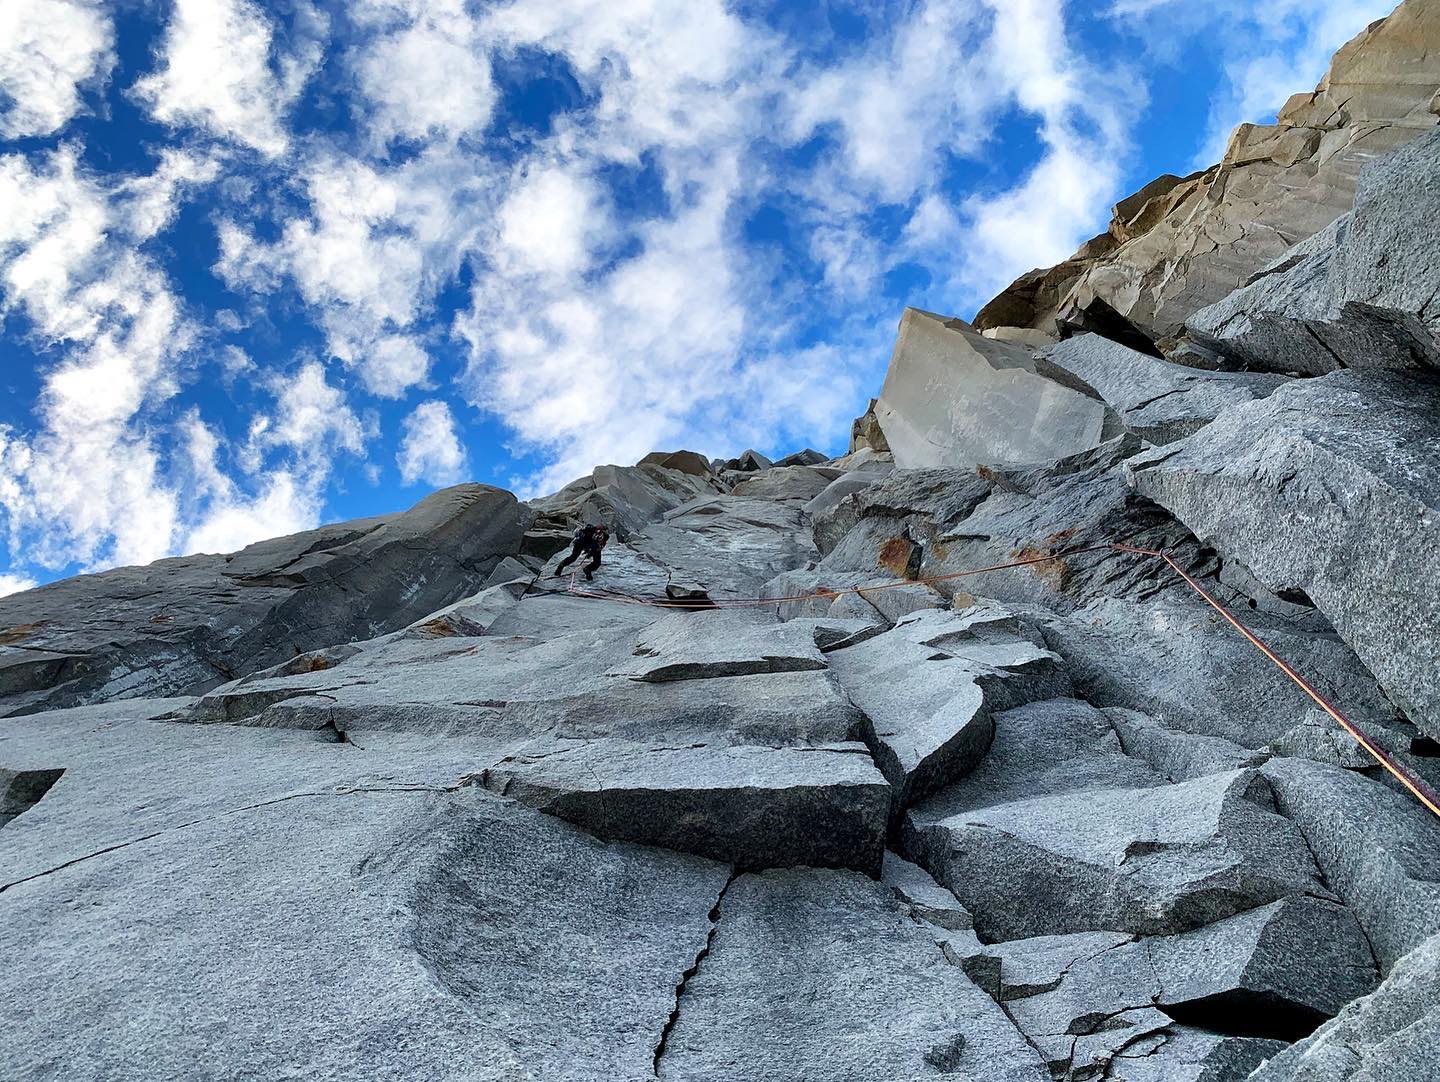 Пепо Хурадо (Pepo Jurado) и Себастьян Пеллетти (Sebastián Pelletti) проложили новый маршрут на вершину пика Ля Оха (La Hoja) в горной группе Торрес-дель-Пайне (Torres del Paine). Фото Patagonia Vertical